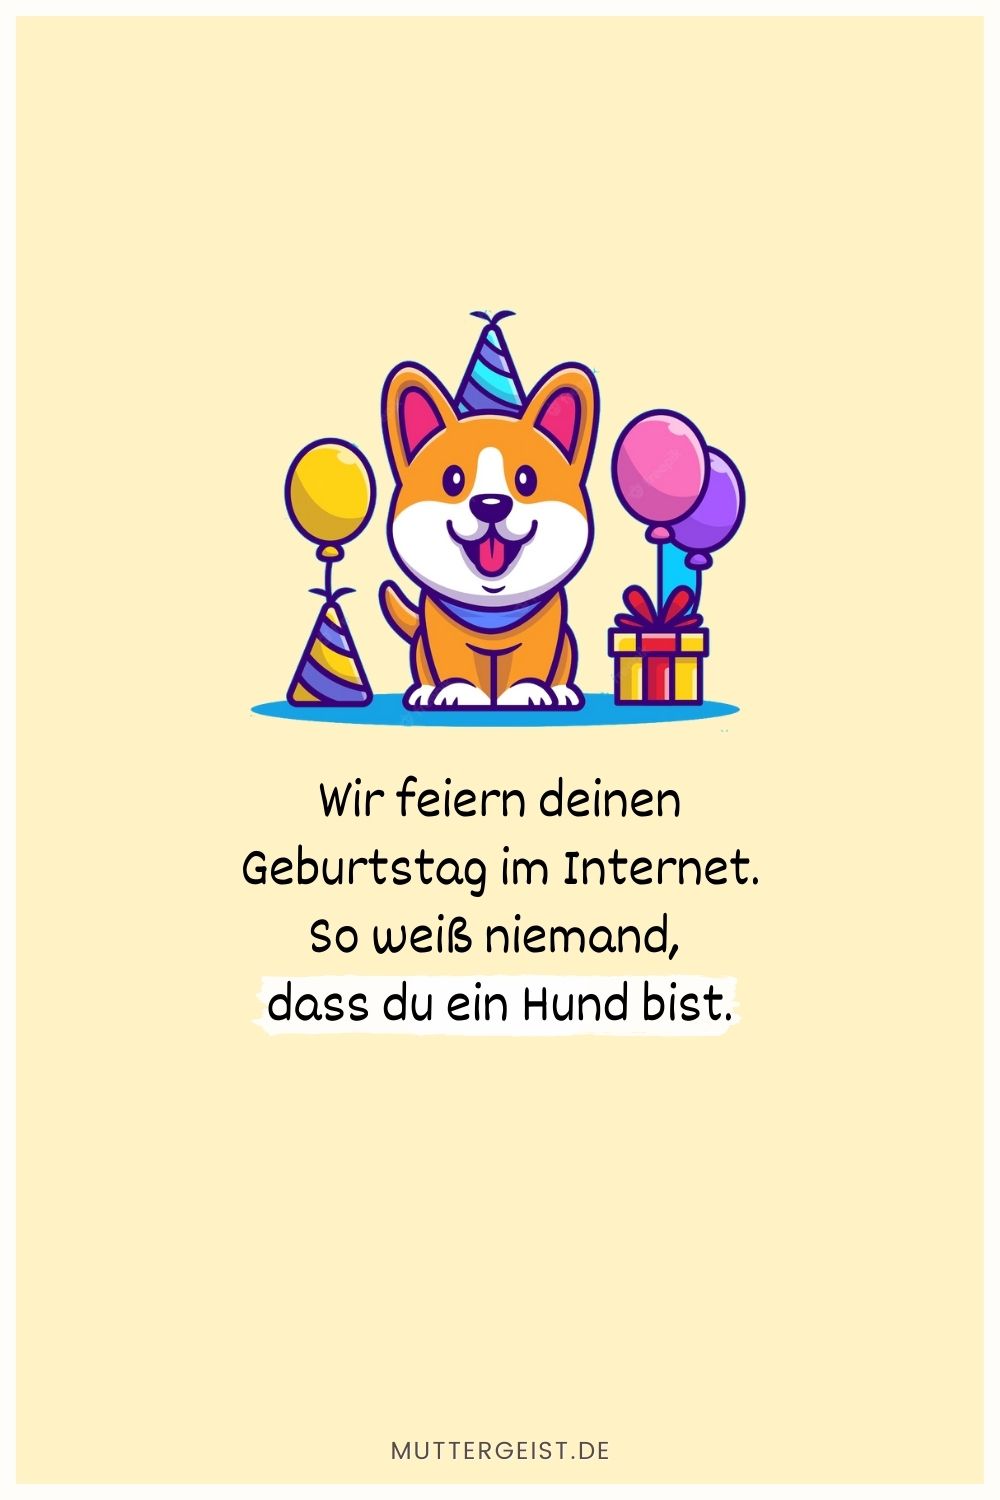 Wir feiern deinen Geburtstag im Internet. So weiß niemand, dass du ein Hund bist